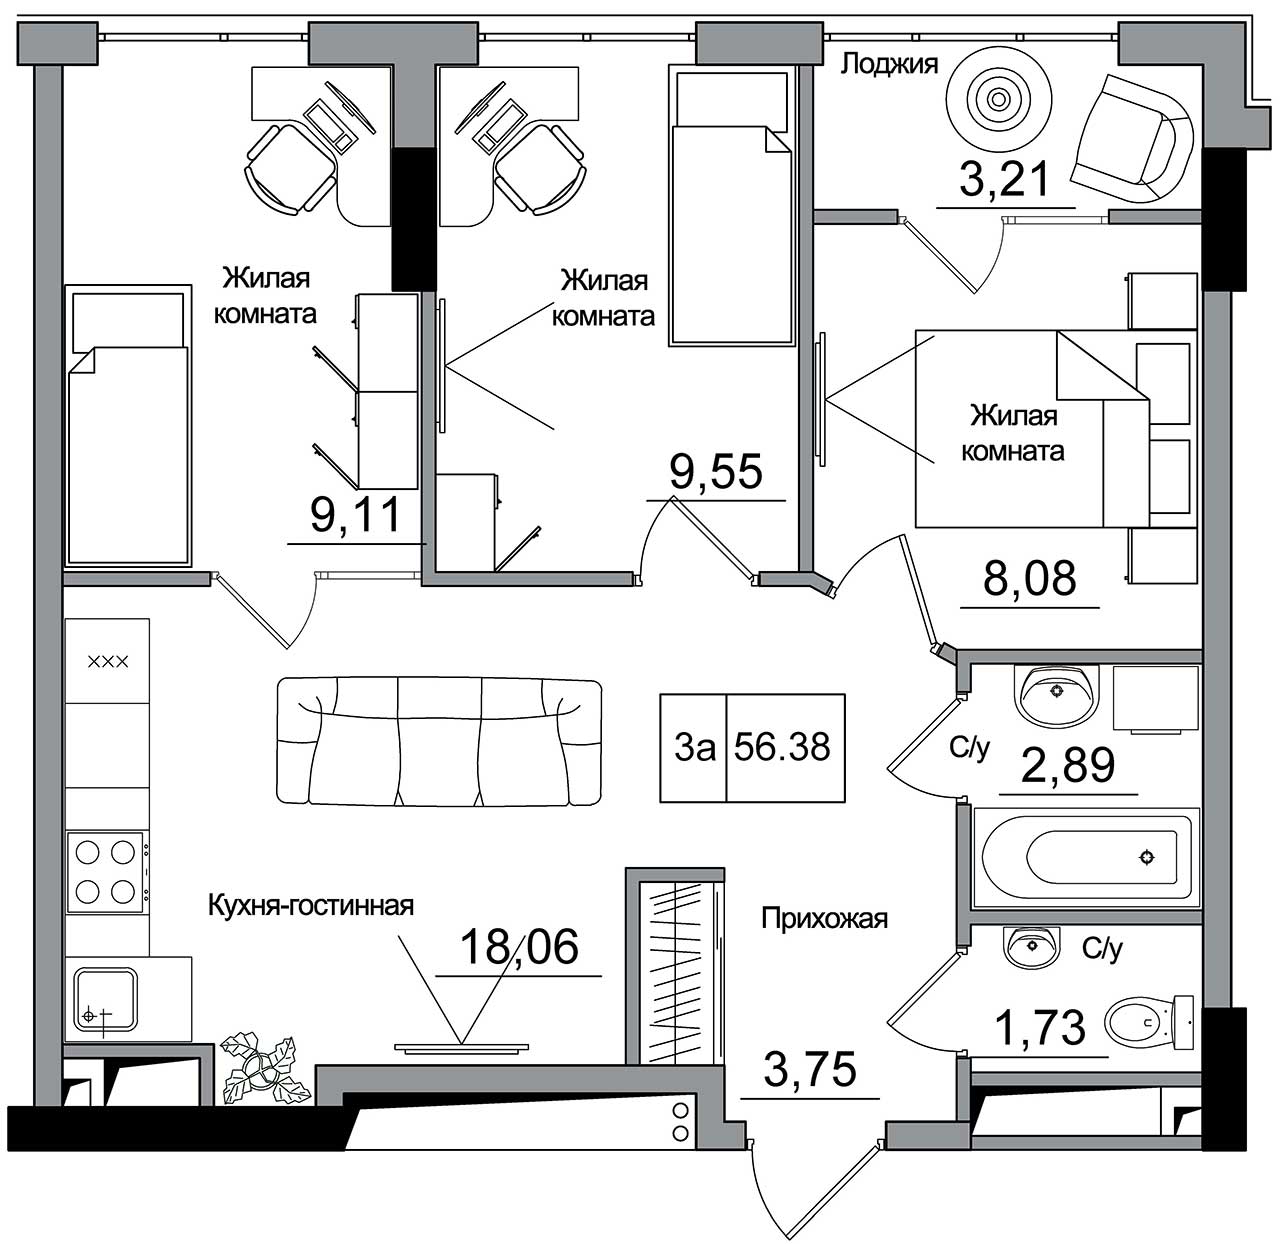 Планування 3-к квартира площею 56.38м2, AB-16-01/00008.